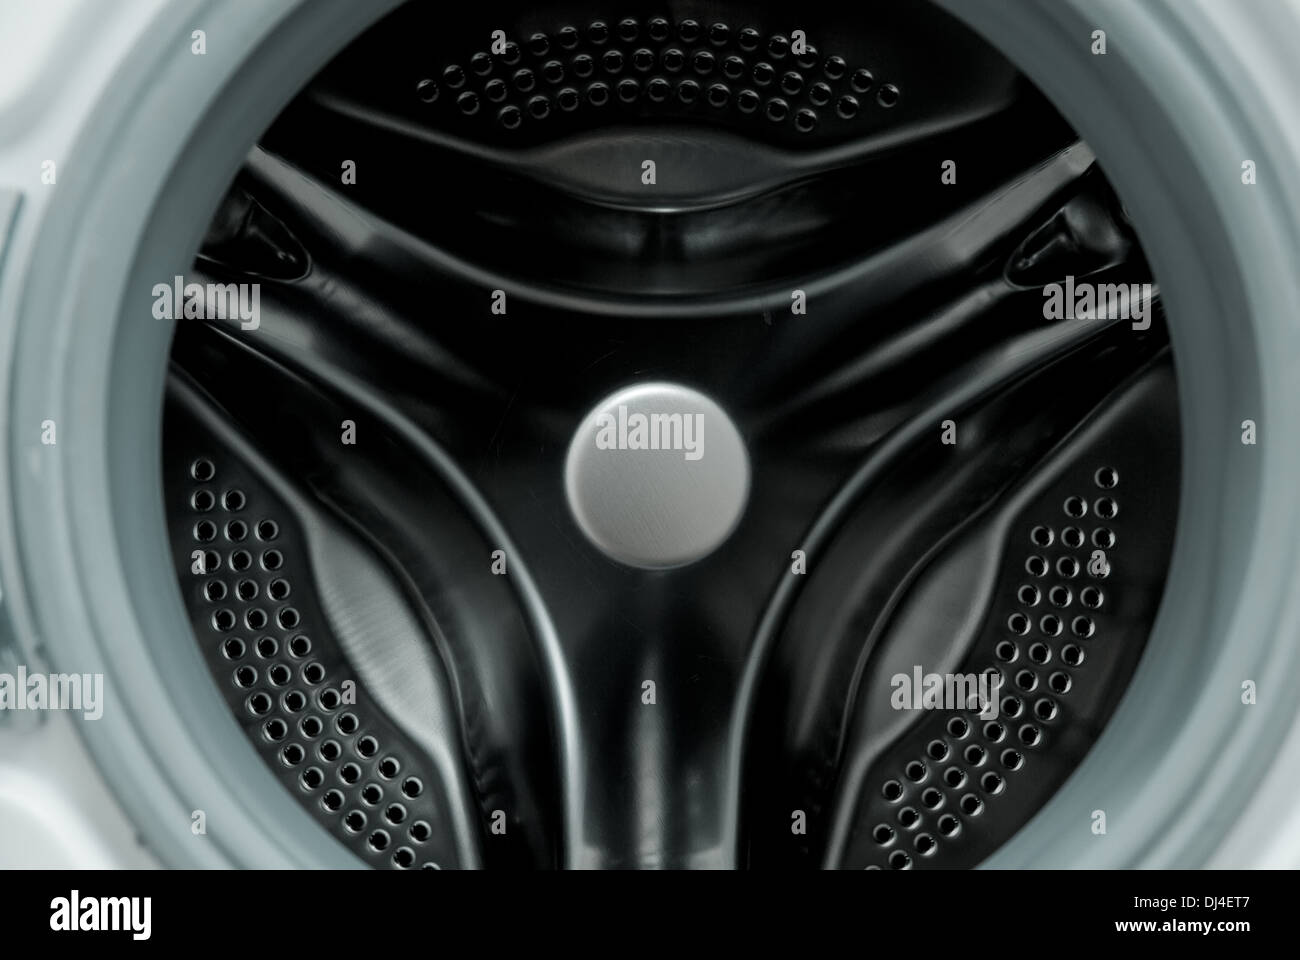 Interior of a drum washing machine Stock Photo